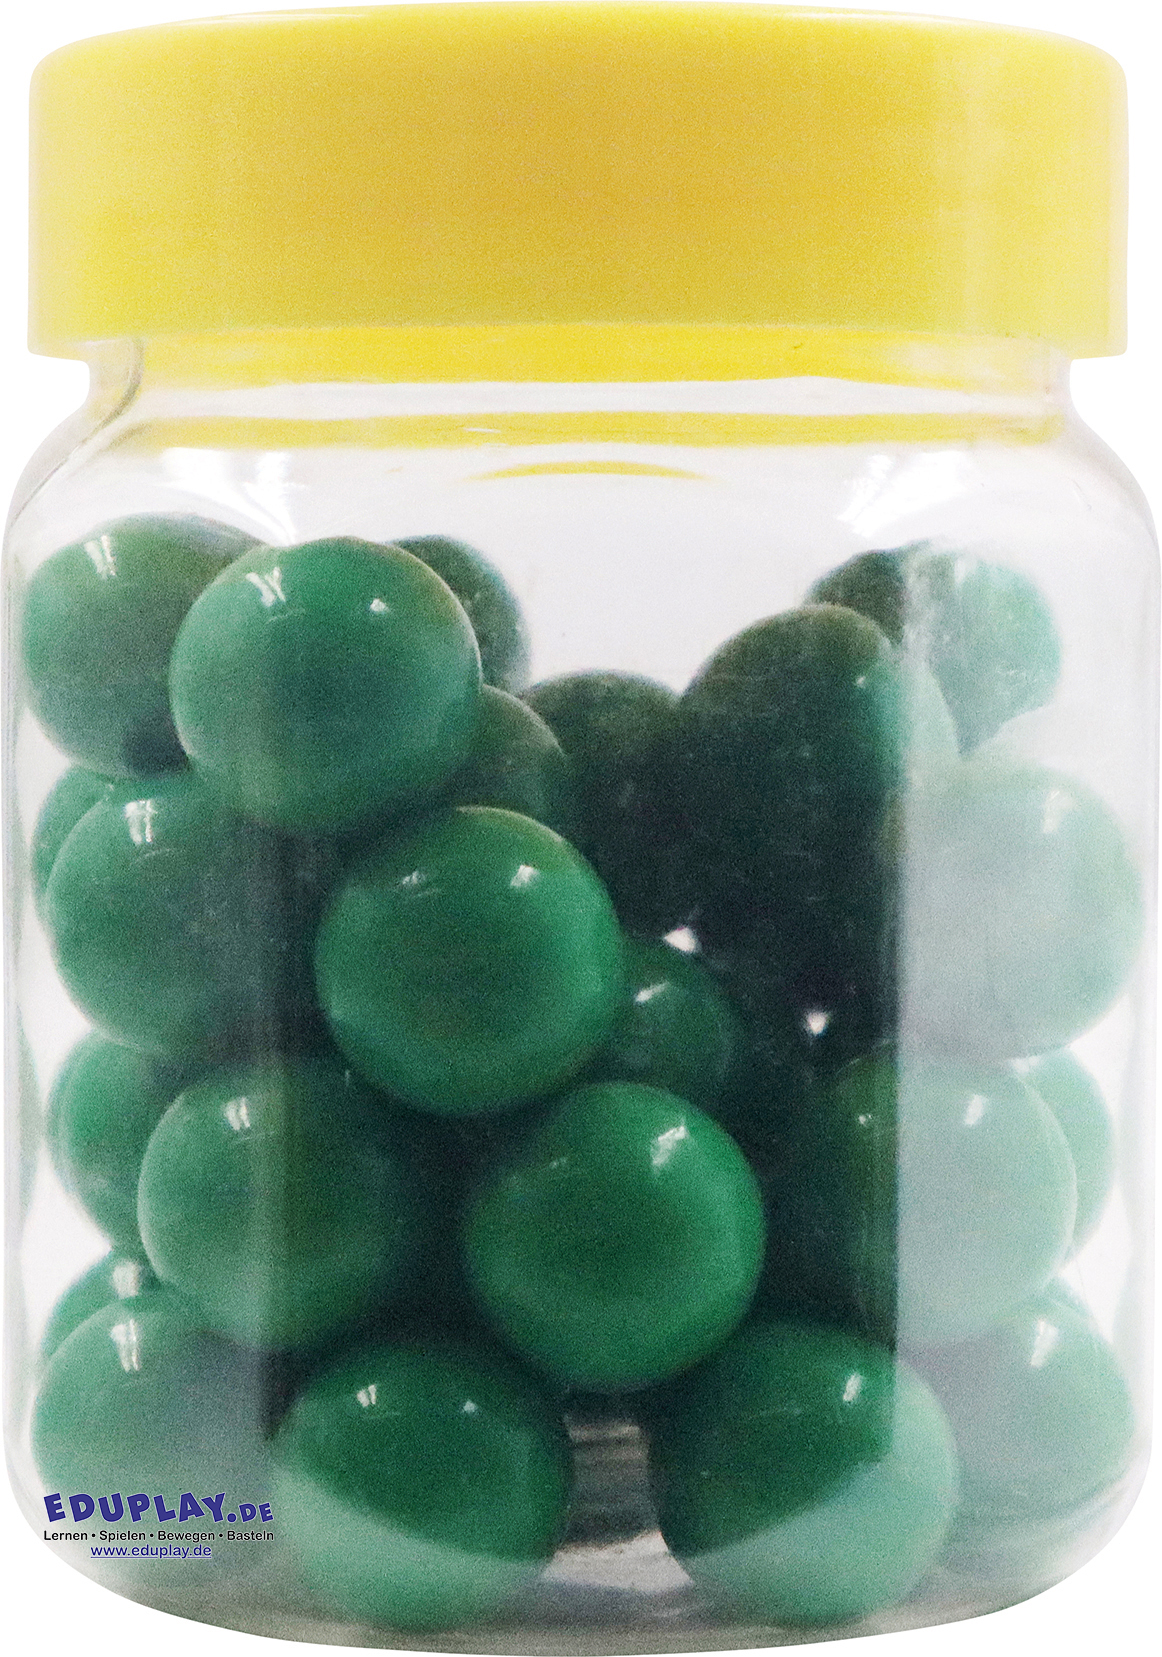 40 Perlen zu Perlenbild-Baukasten, 8 Farben zur Auswahl